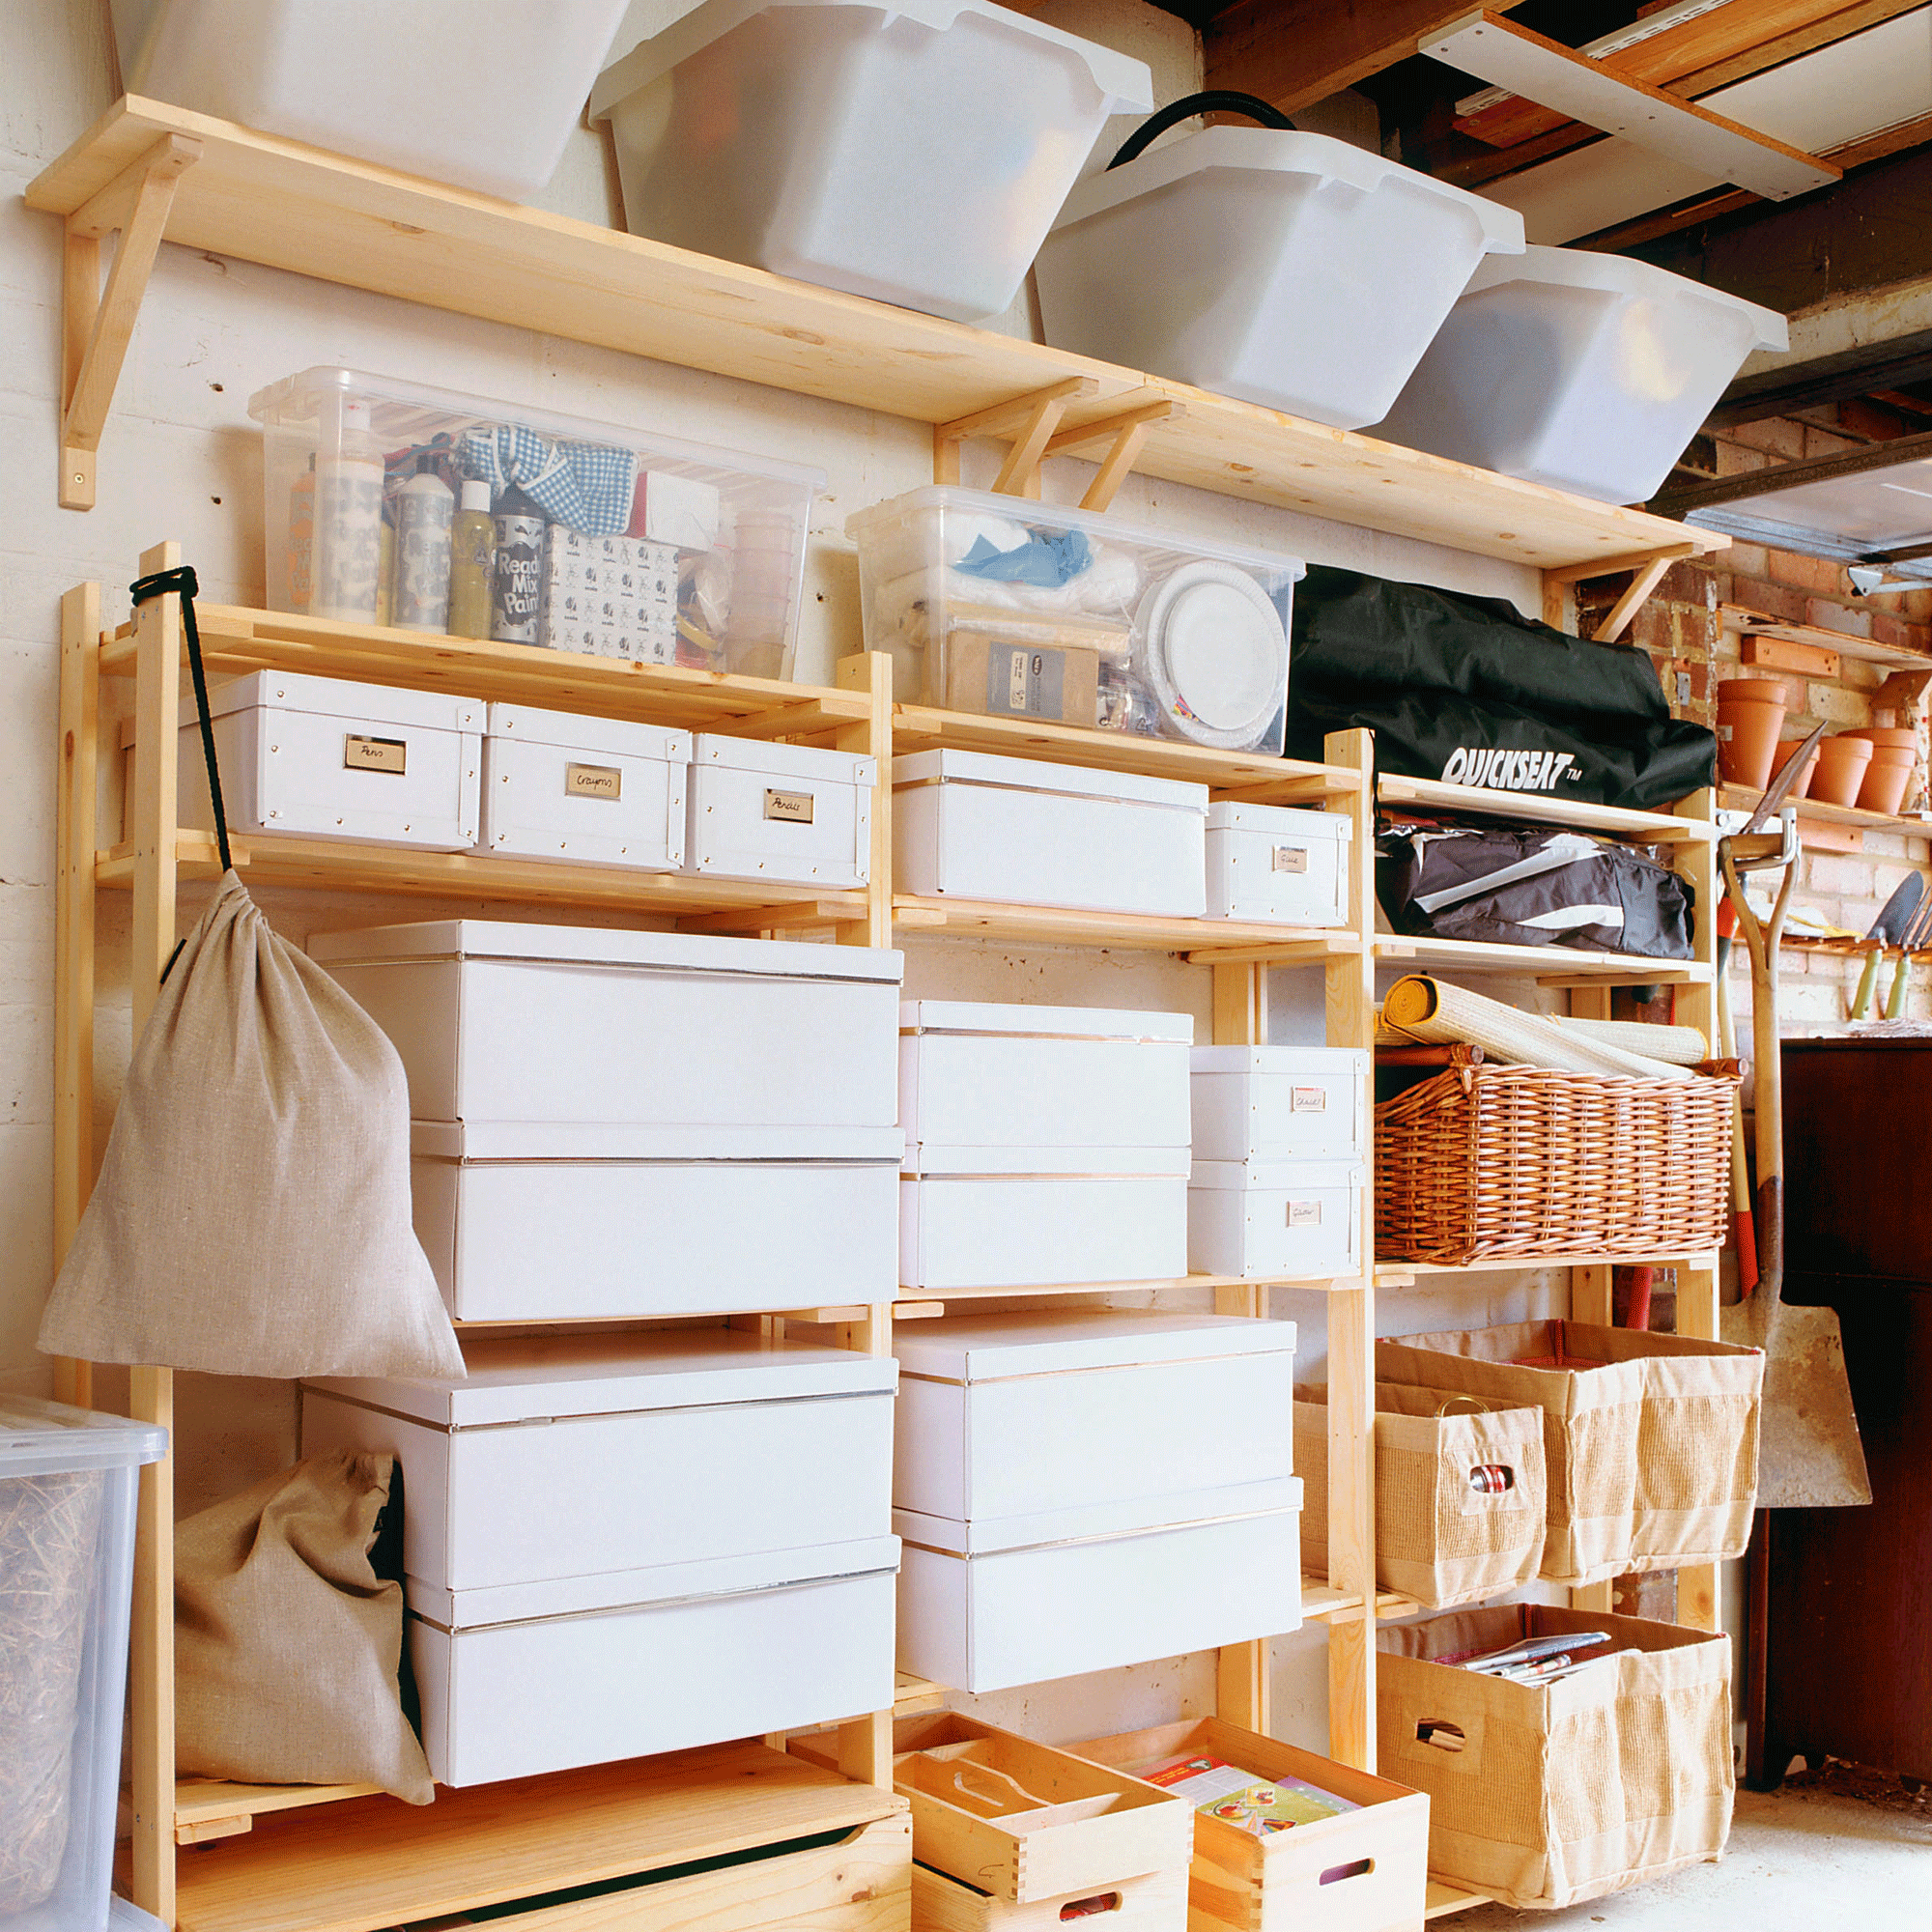 Garage storage in white boxes